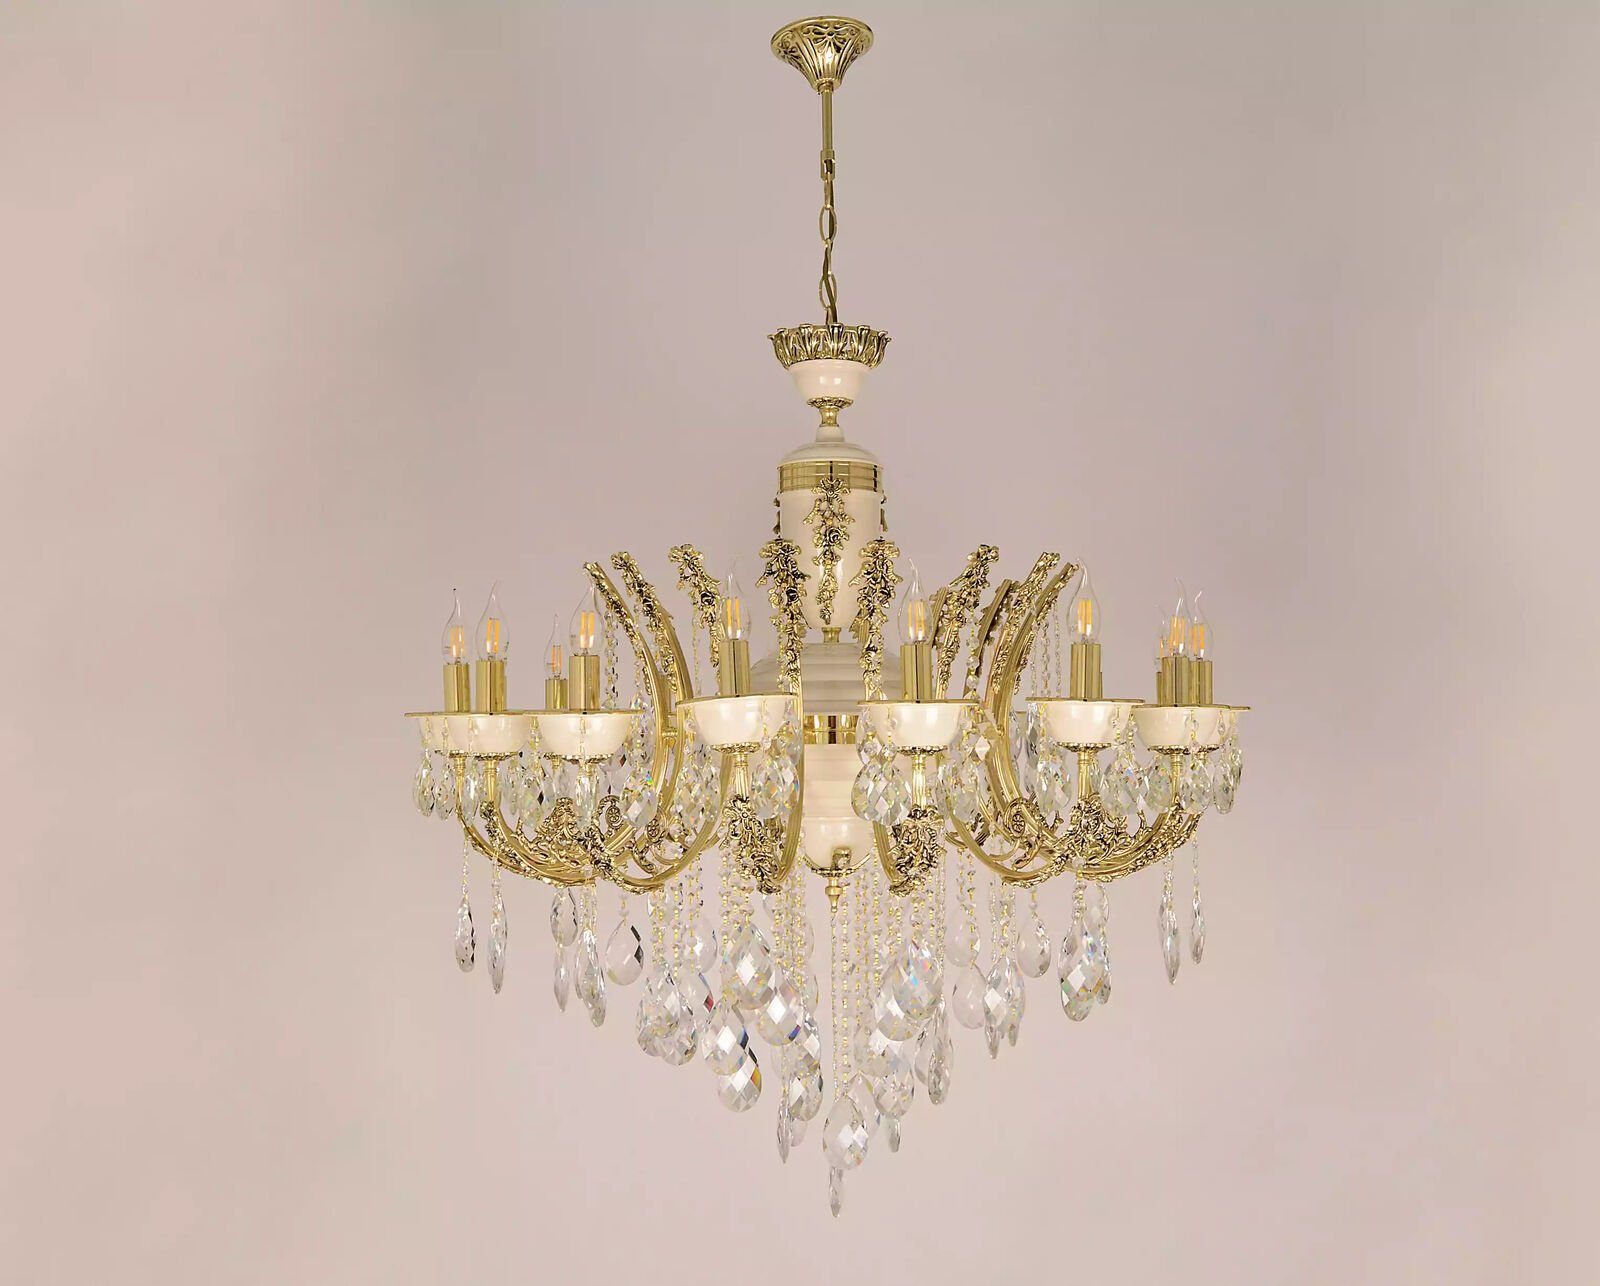 JVmoebel Deckenleuchte Deckenleuchter Luxus Kronleuchter Deckenlampe Gold Kristall Lampe, Made in Europa